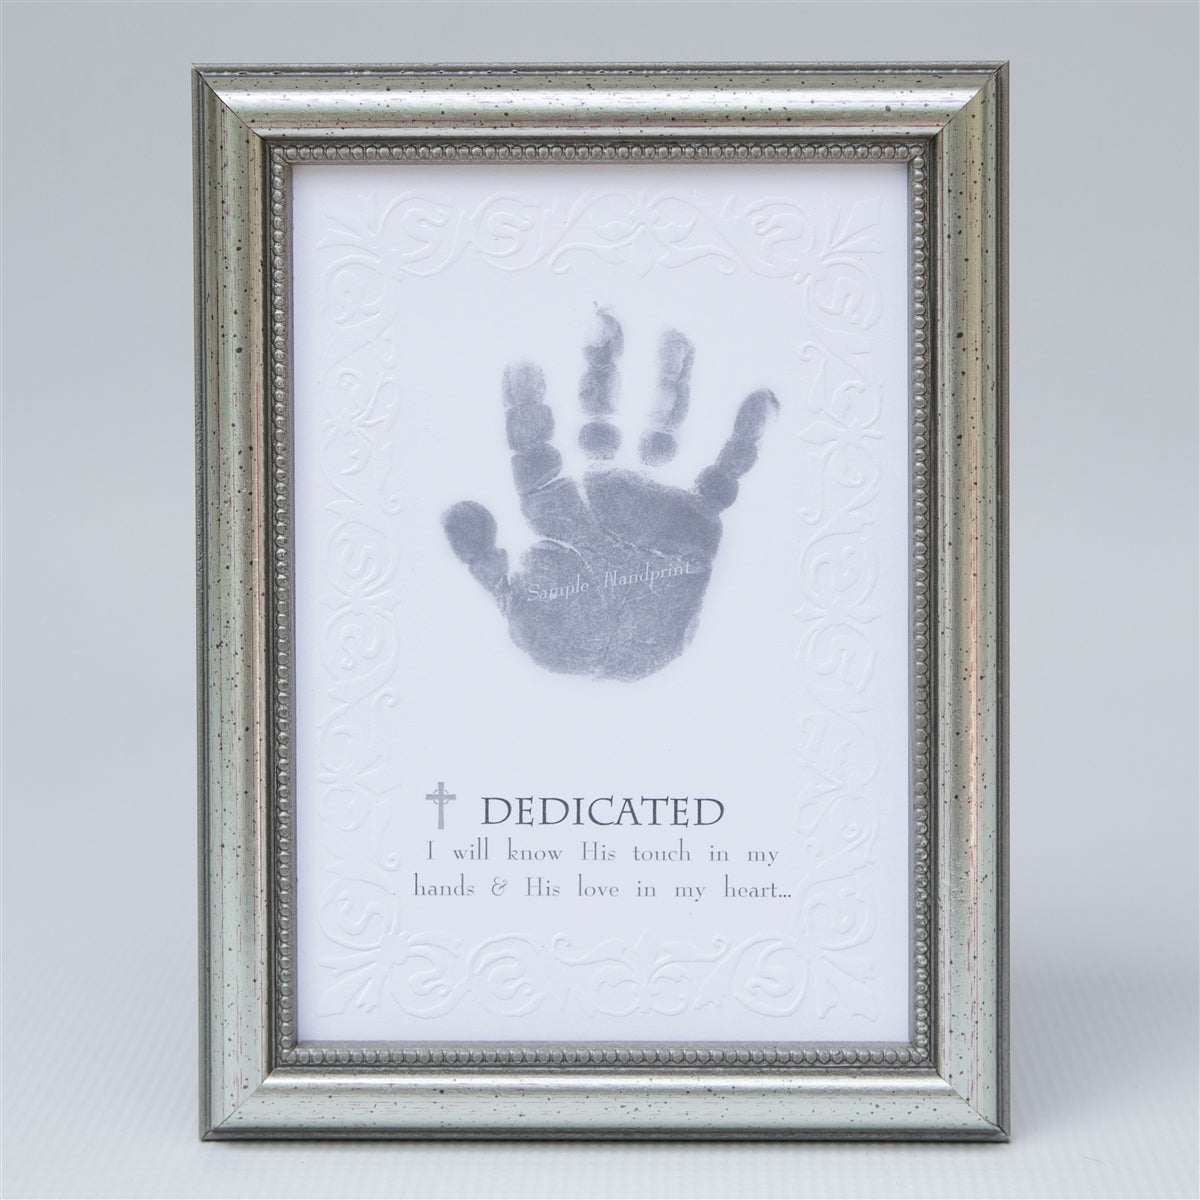 Dedicated handprint keepsake in elegant frame in silver with embossed beaded design.